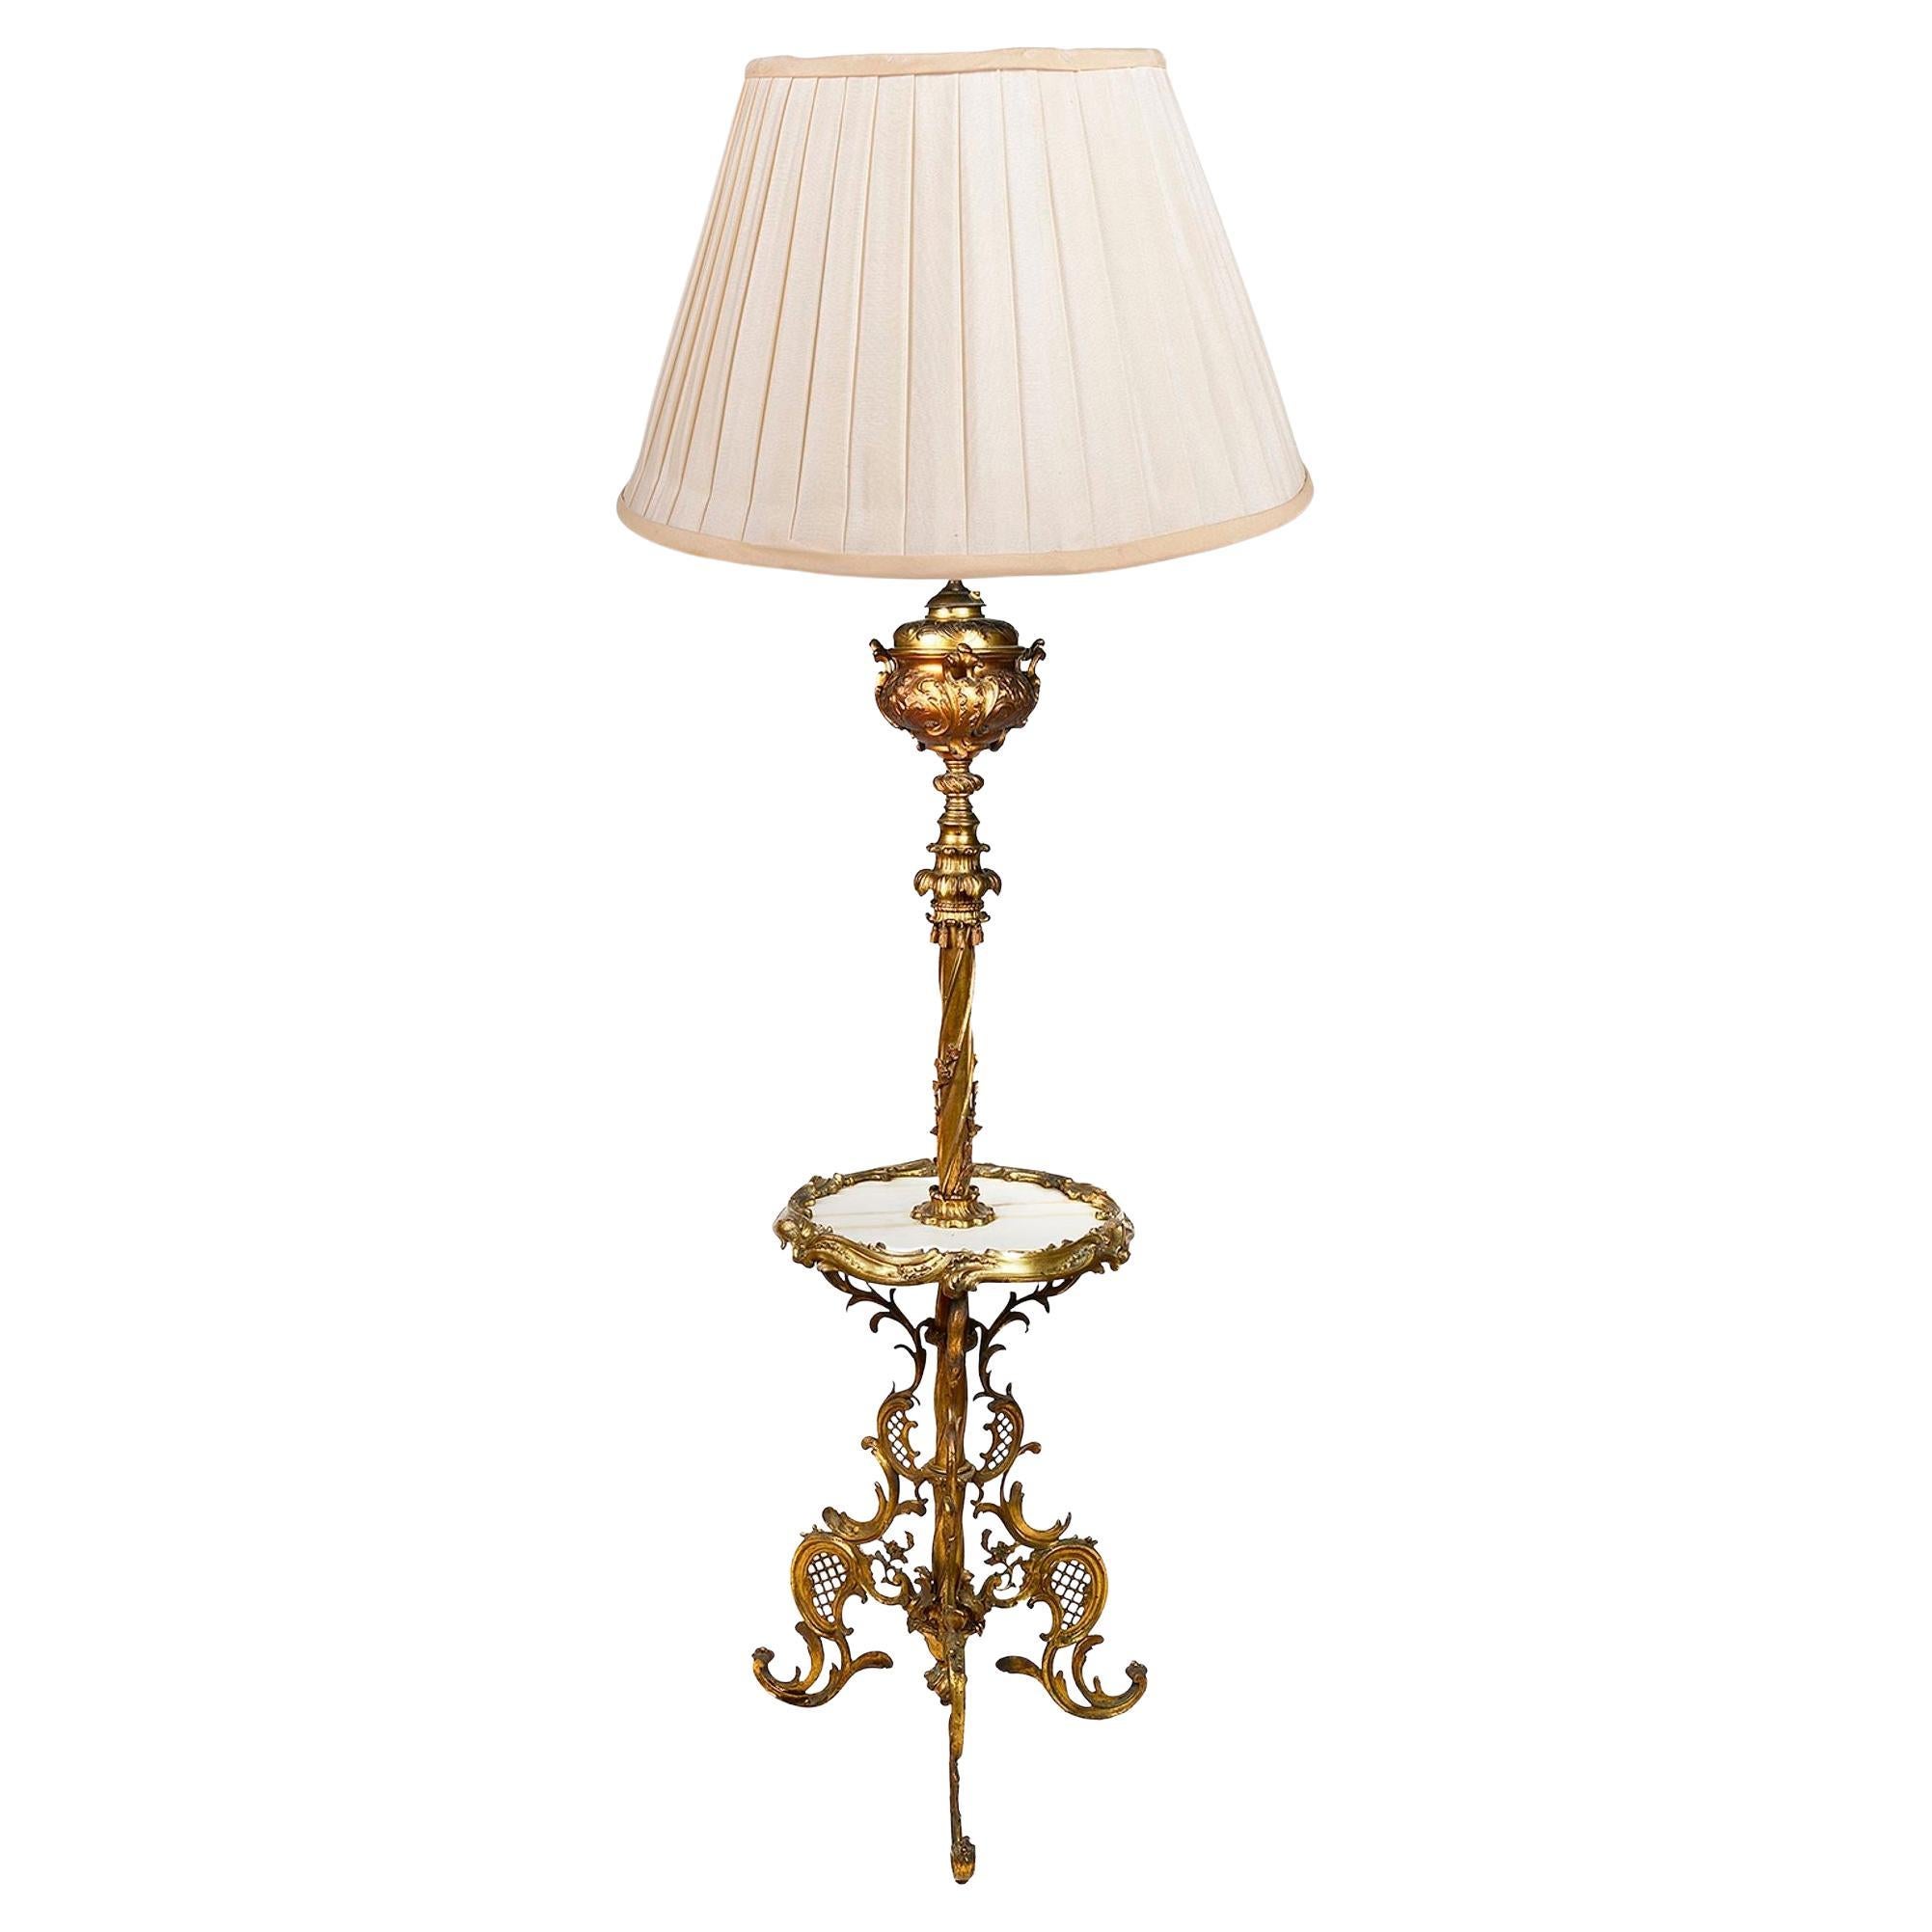 Gilded Ormolu Louis XVI style standard lamp.